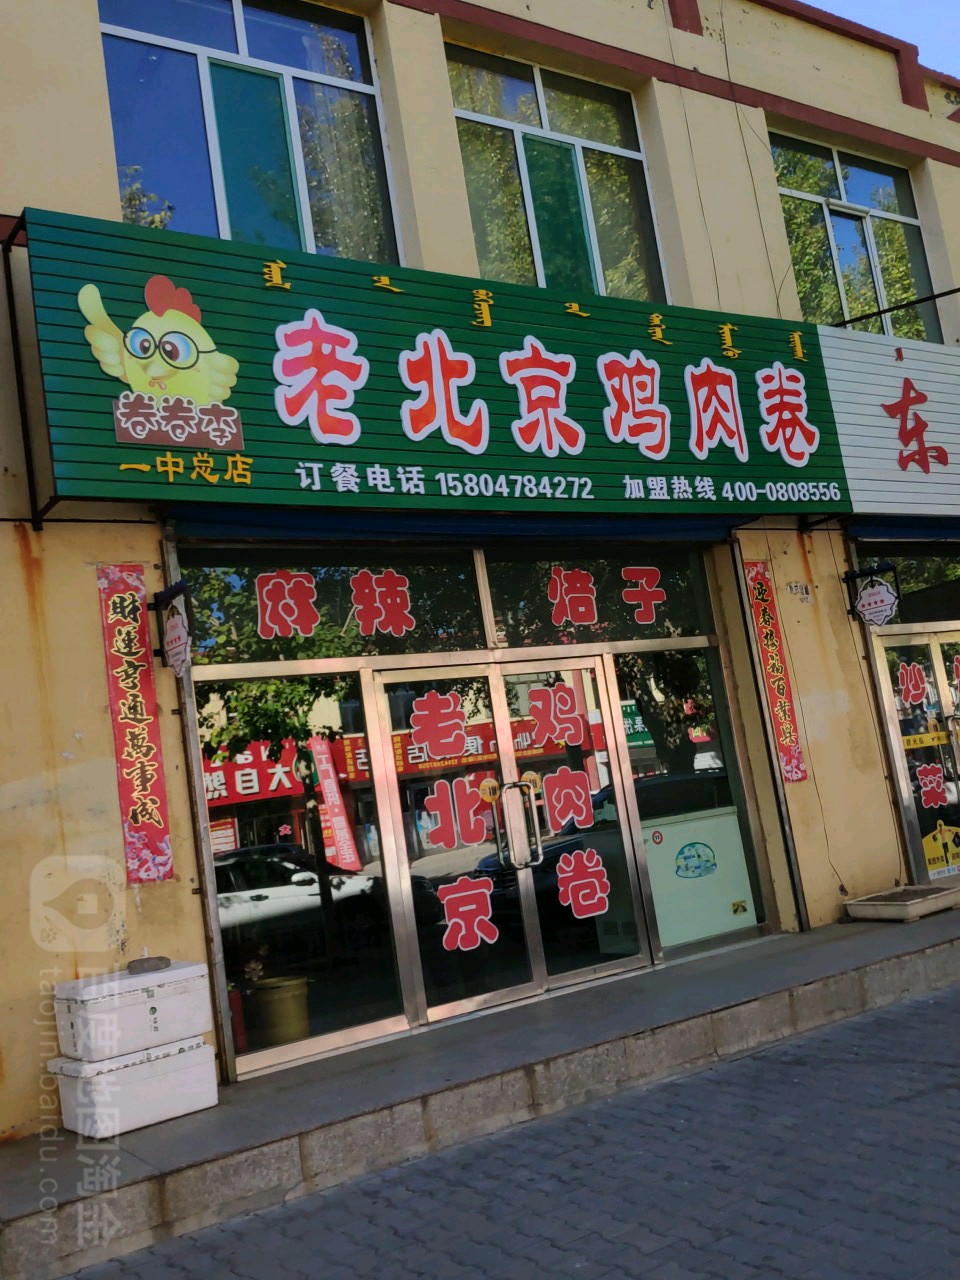 老北京鸡肉卷(麻辣焙子)